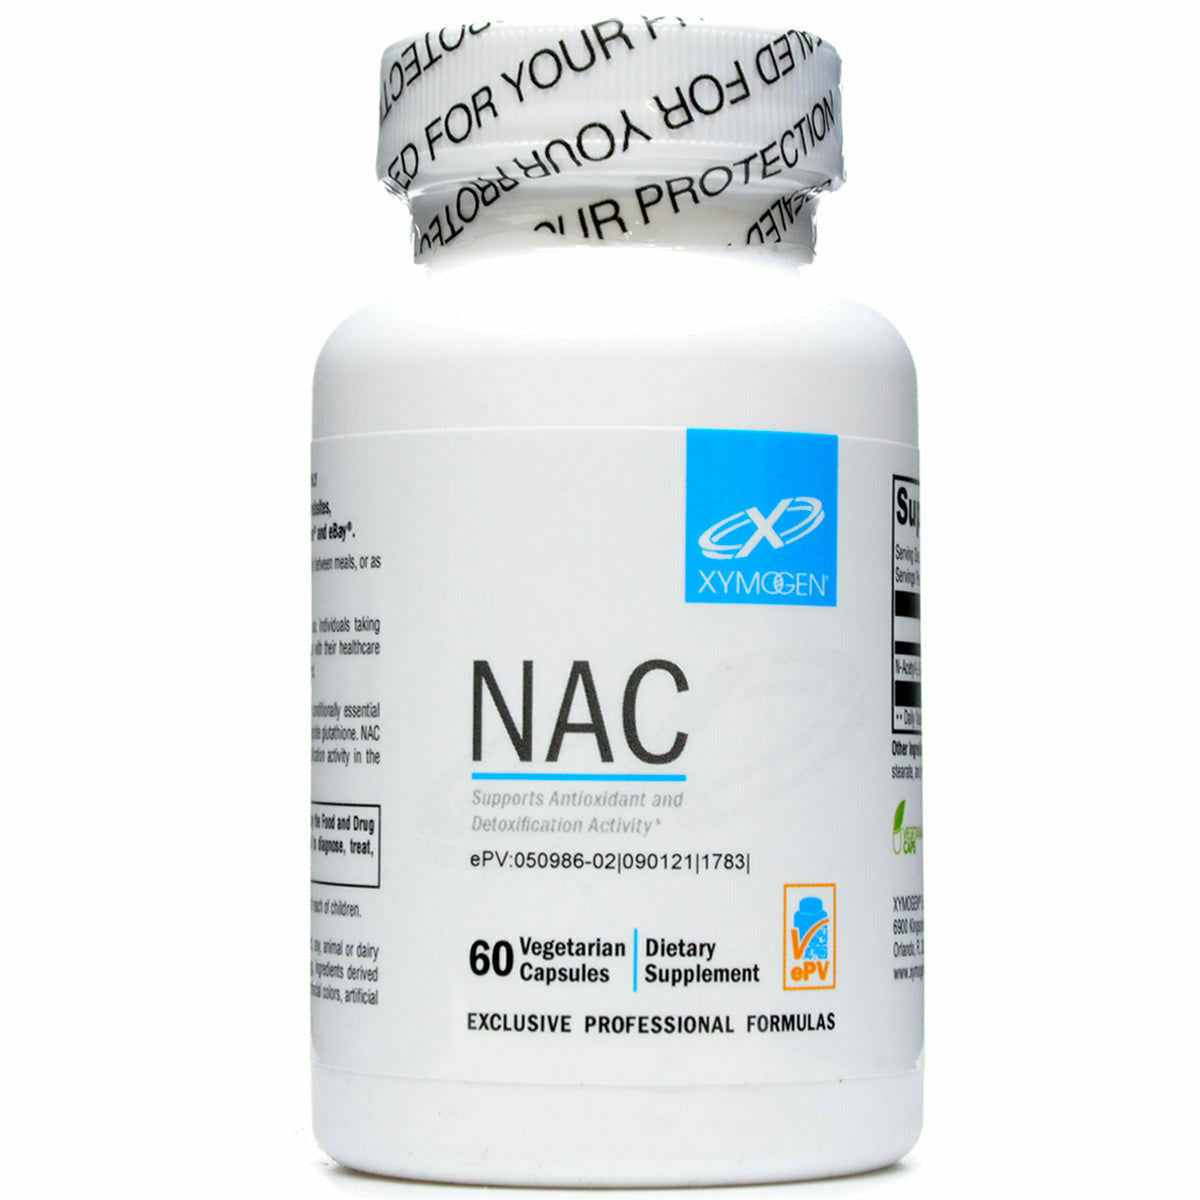 Xymogen NAC - ePothex